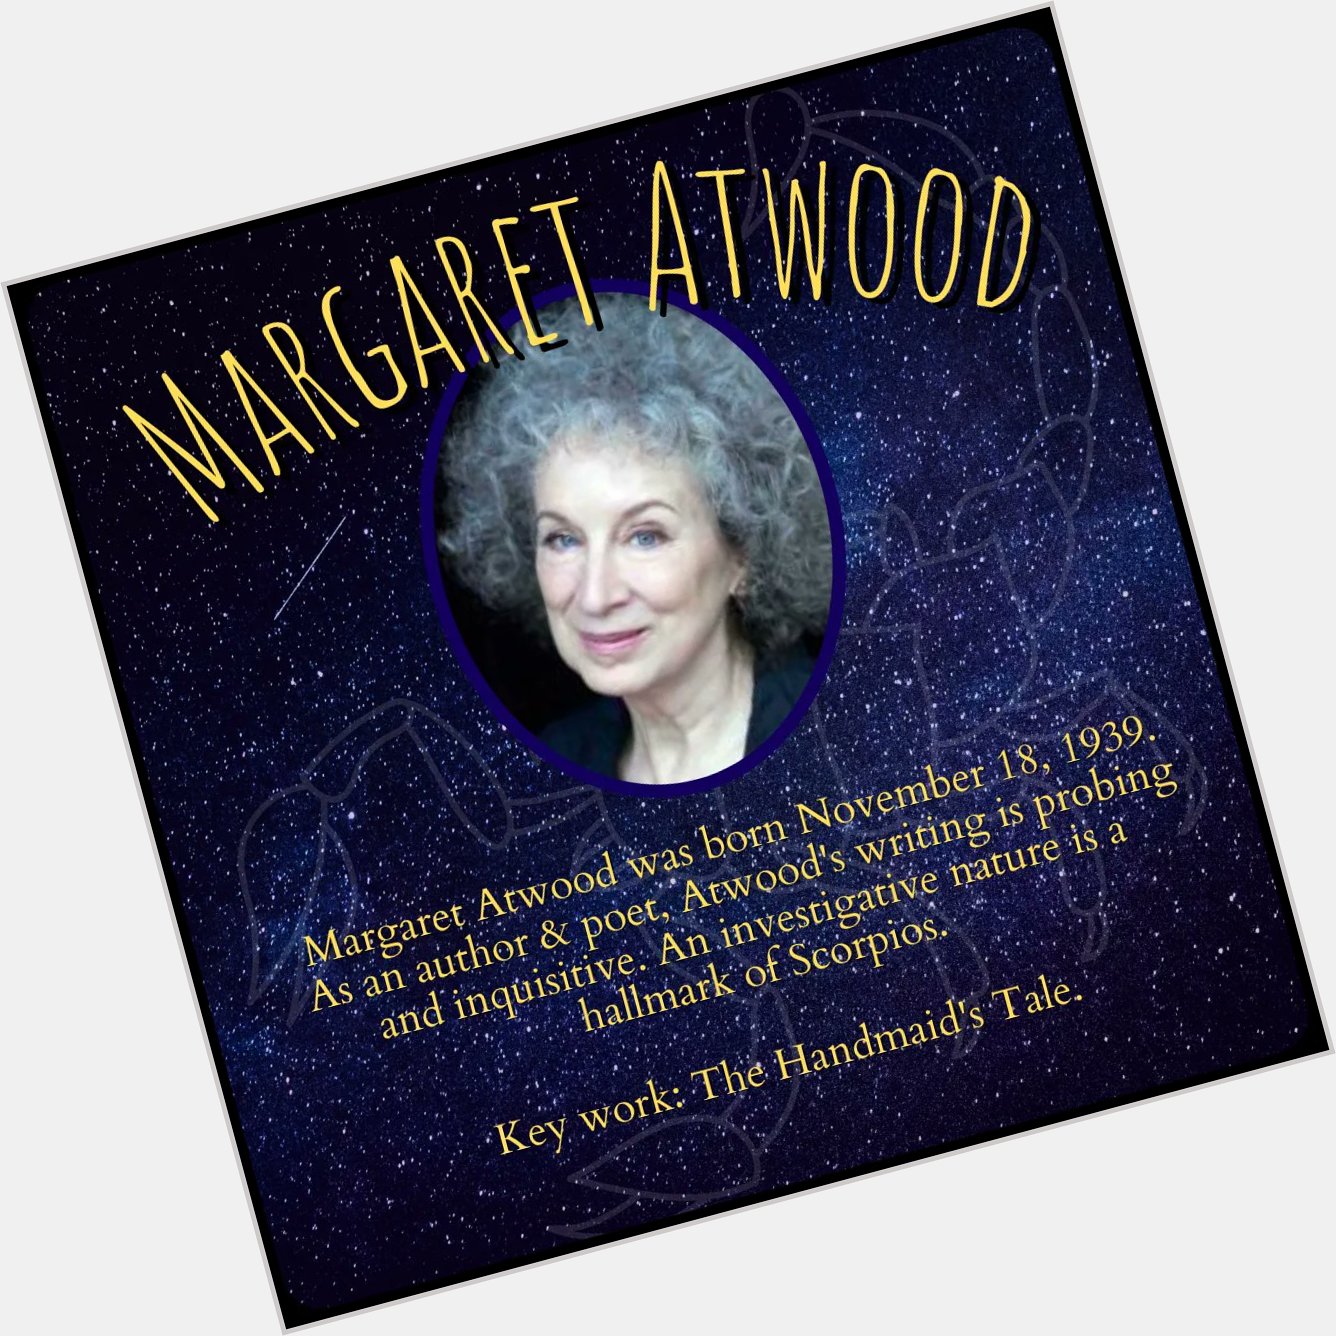 Happy birthday to Scorpio author, Margaret Atwood! 